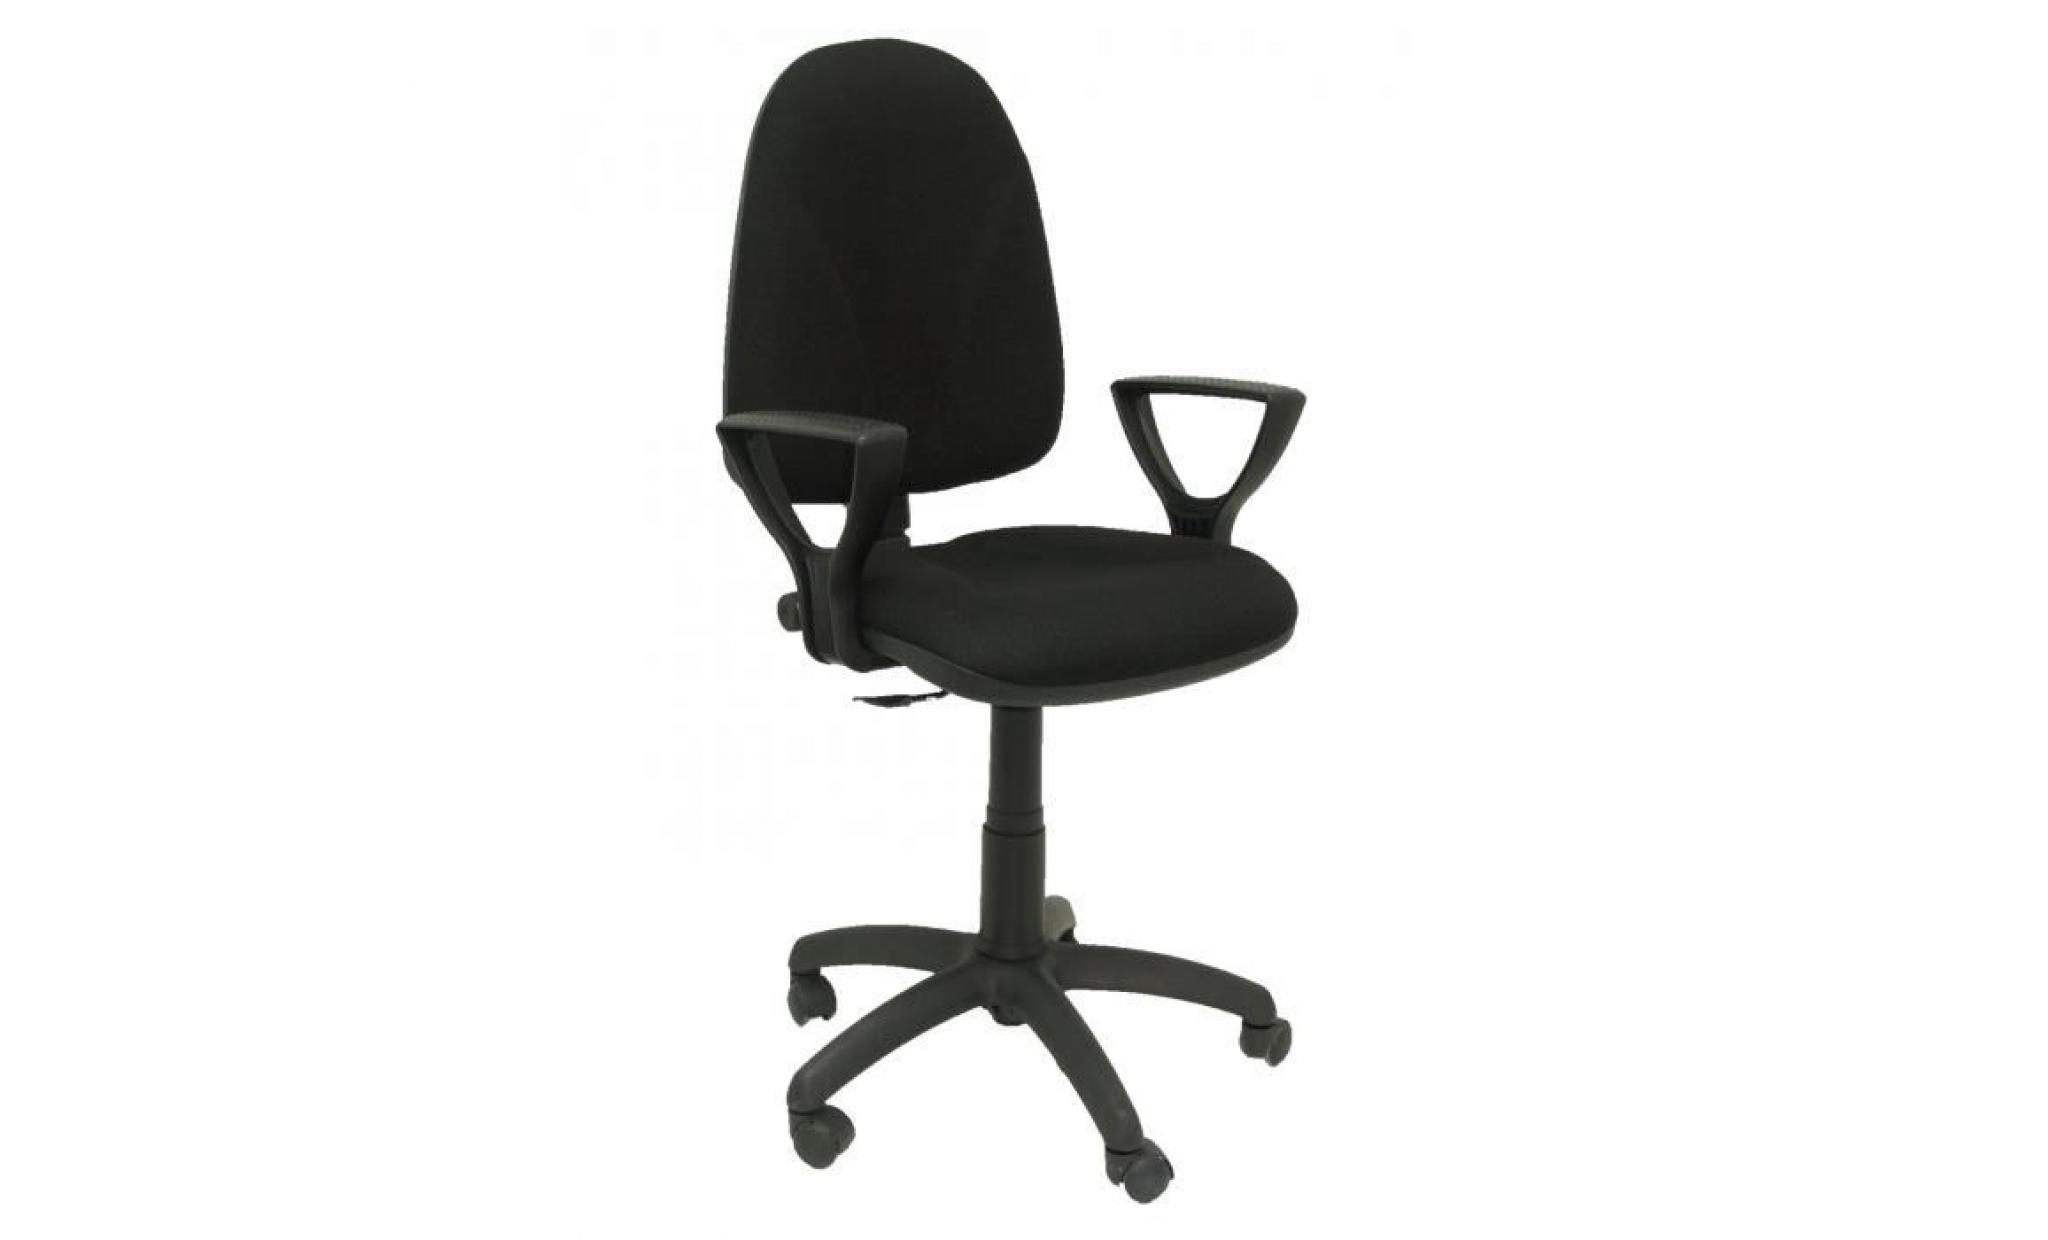 modello 1006ne algarra   sedia da ufficio ergonomica con meccanismo di contatto permanente e regolabile in altezza   sedile e pas cher